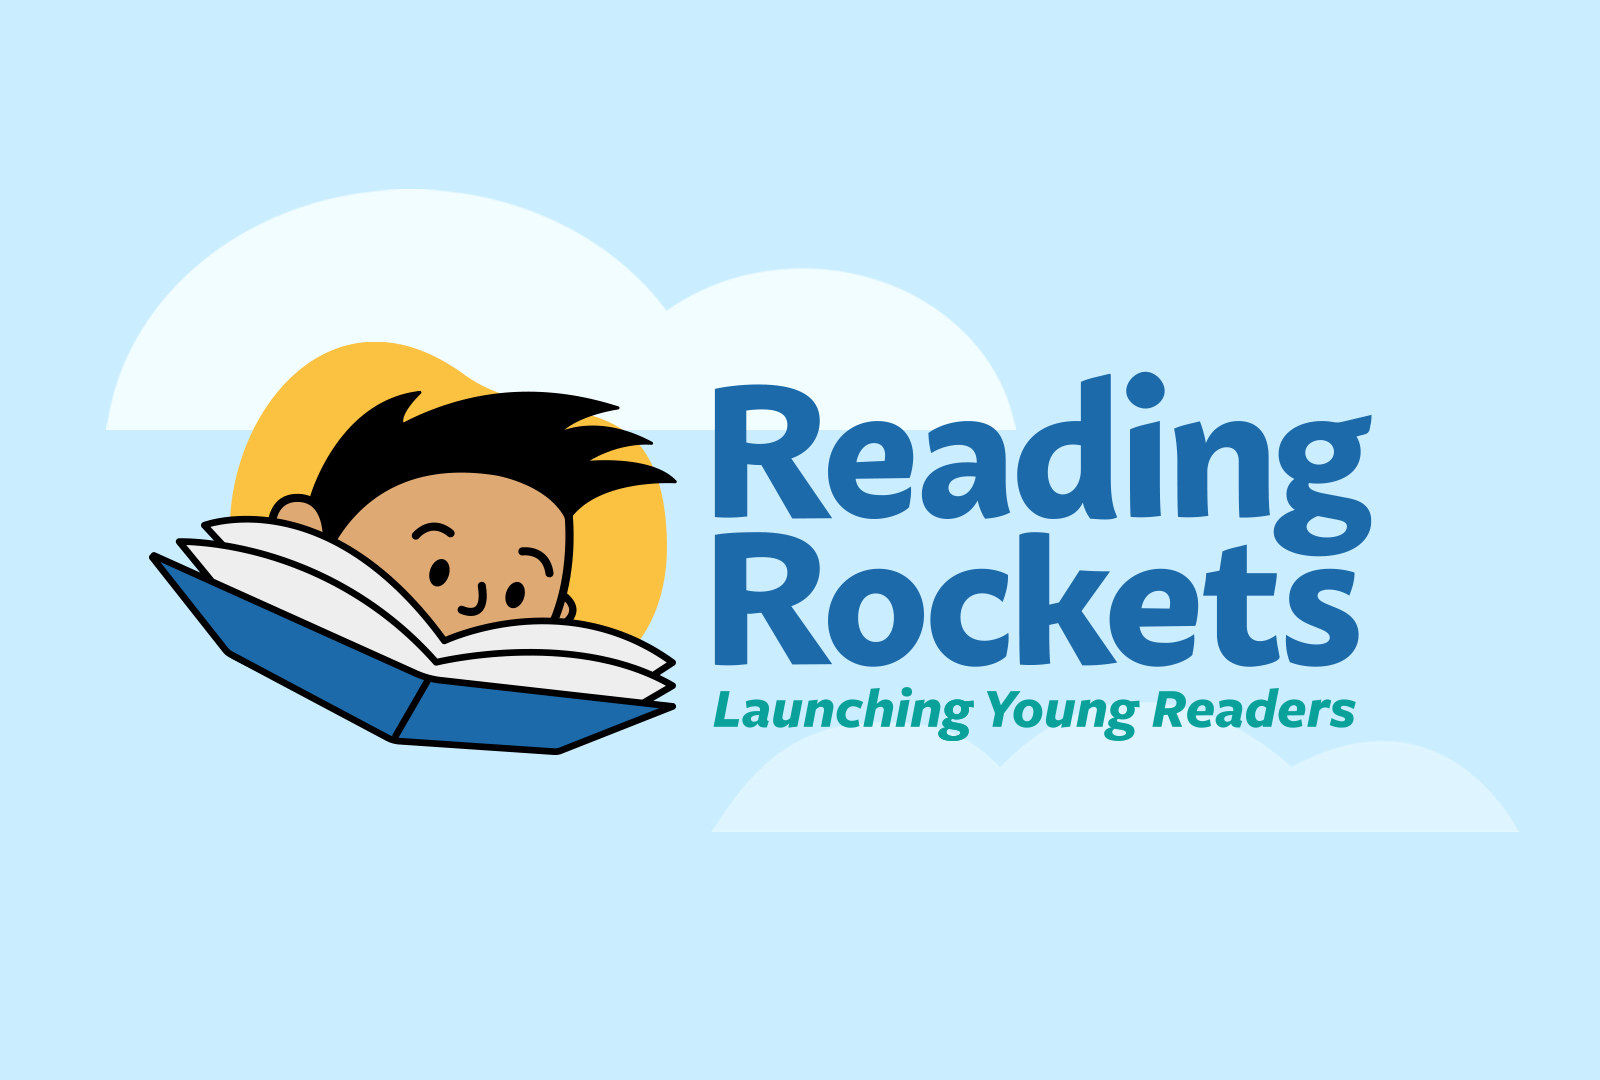 The Reading Rockets logo